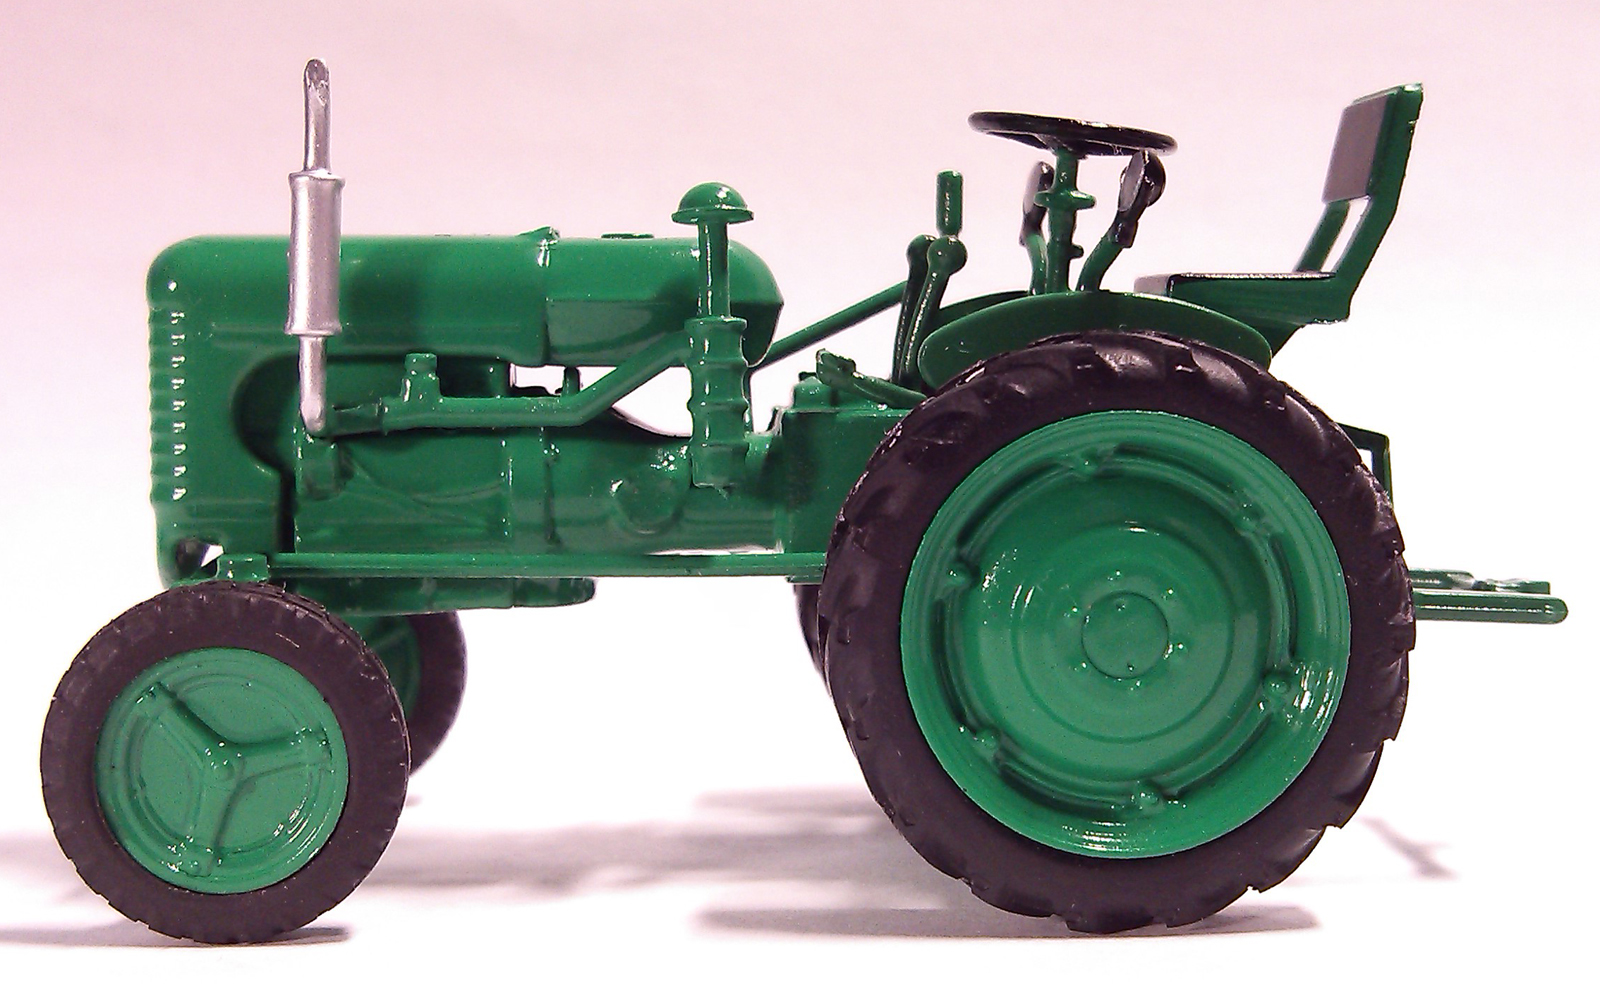 Трактора хтз — модели их технические характеристики, особенности